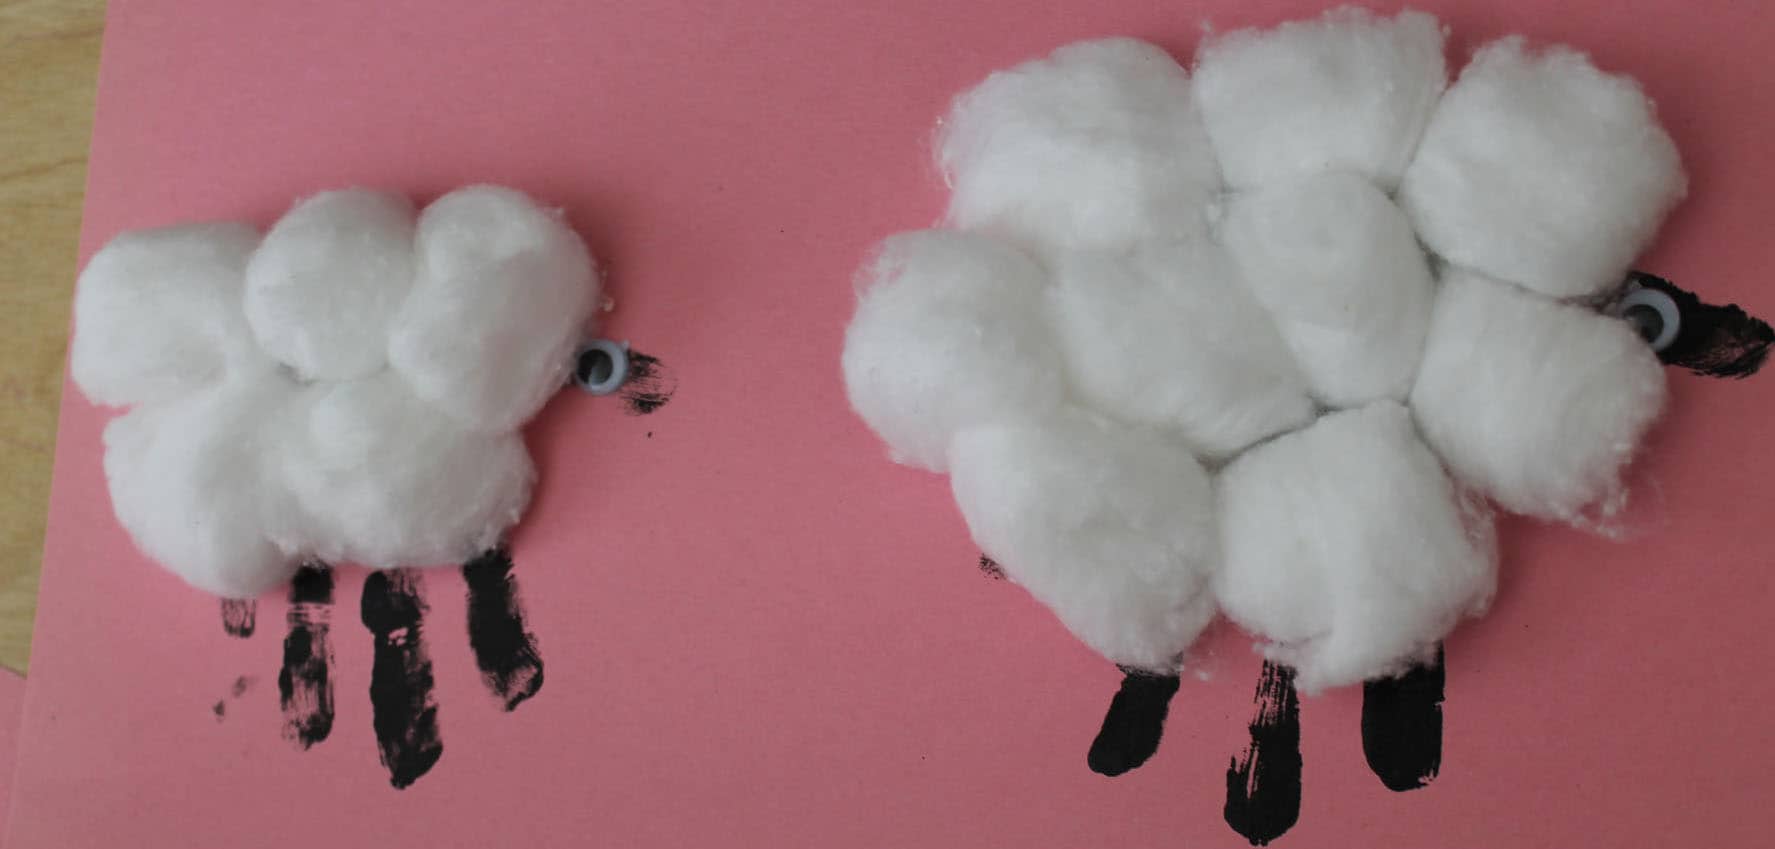 Little cotton ball sheep